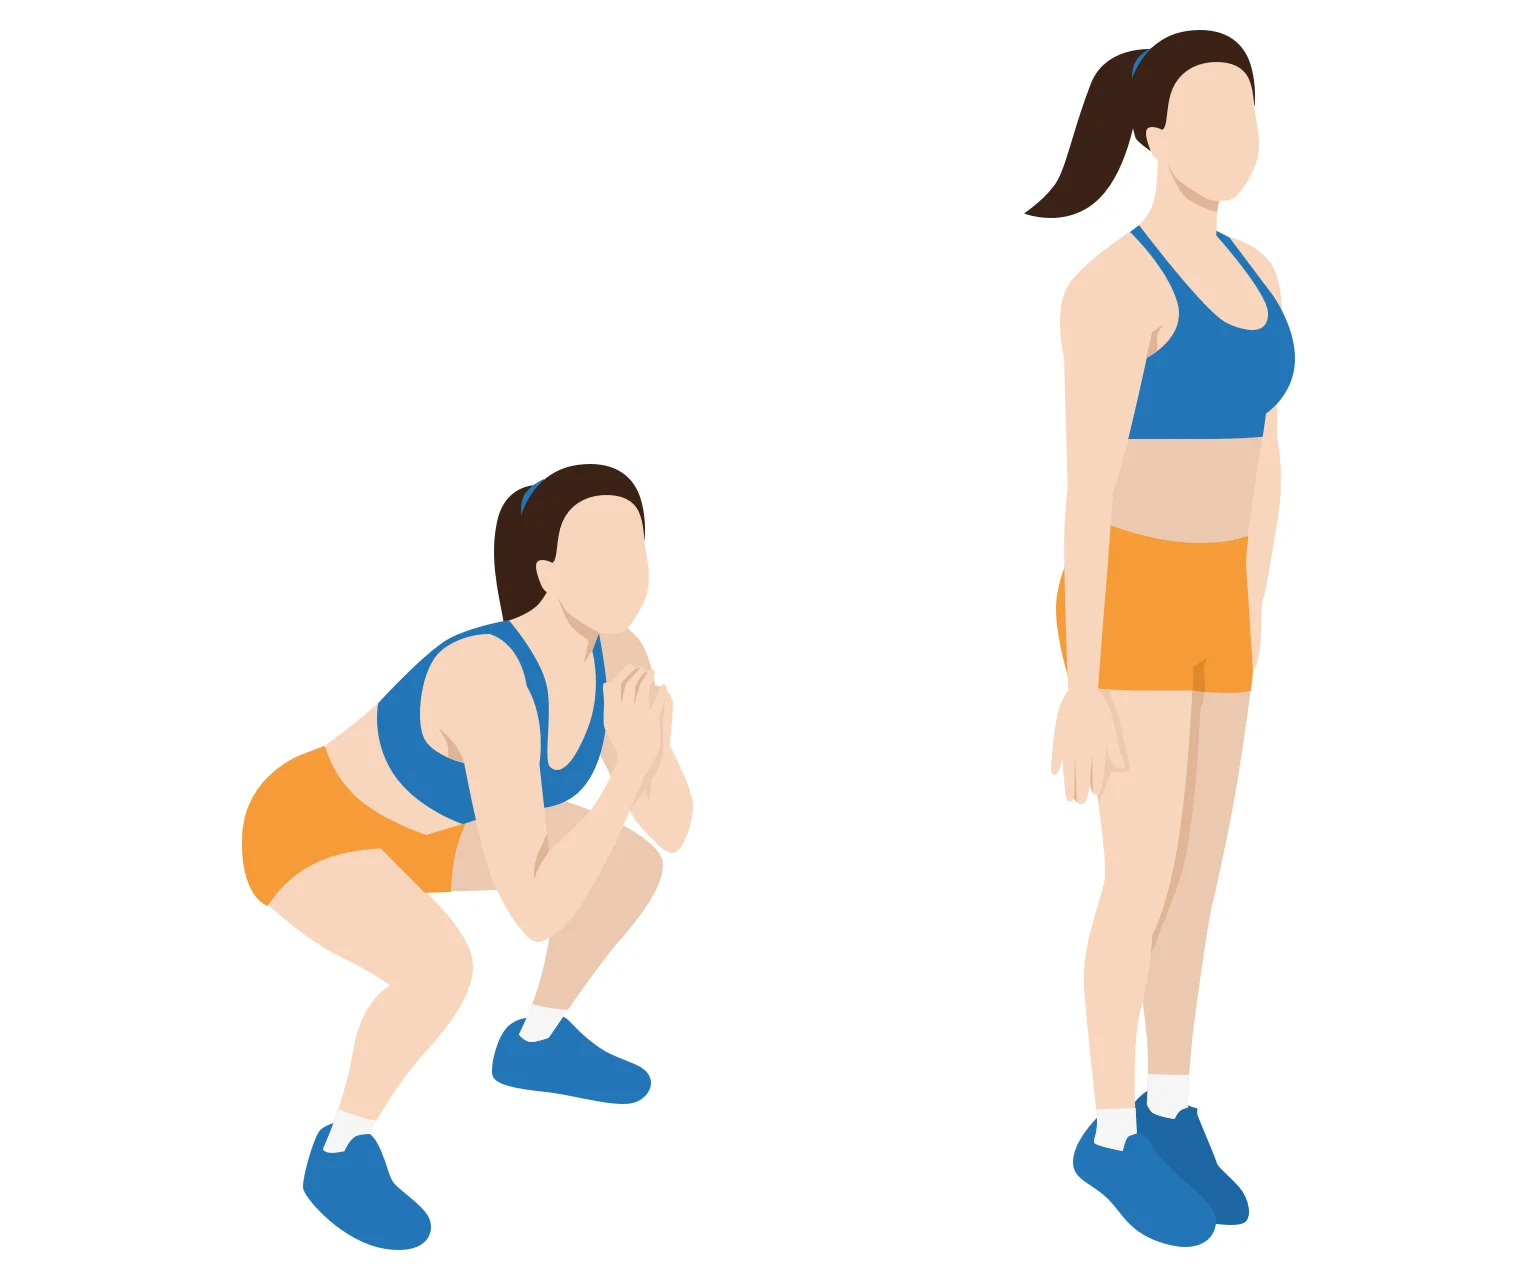 diagram - How to do squat jacks